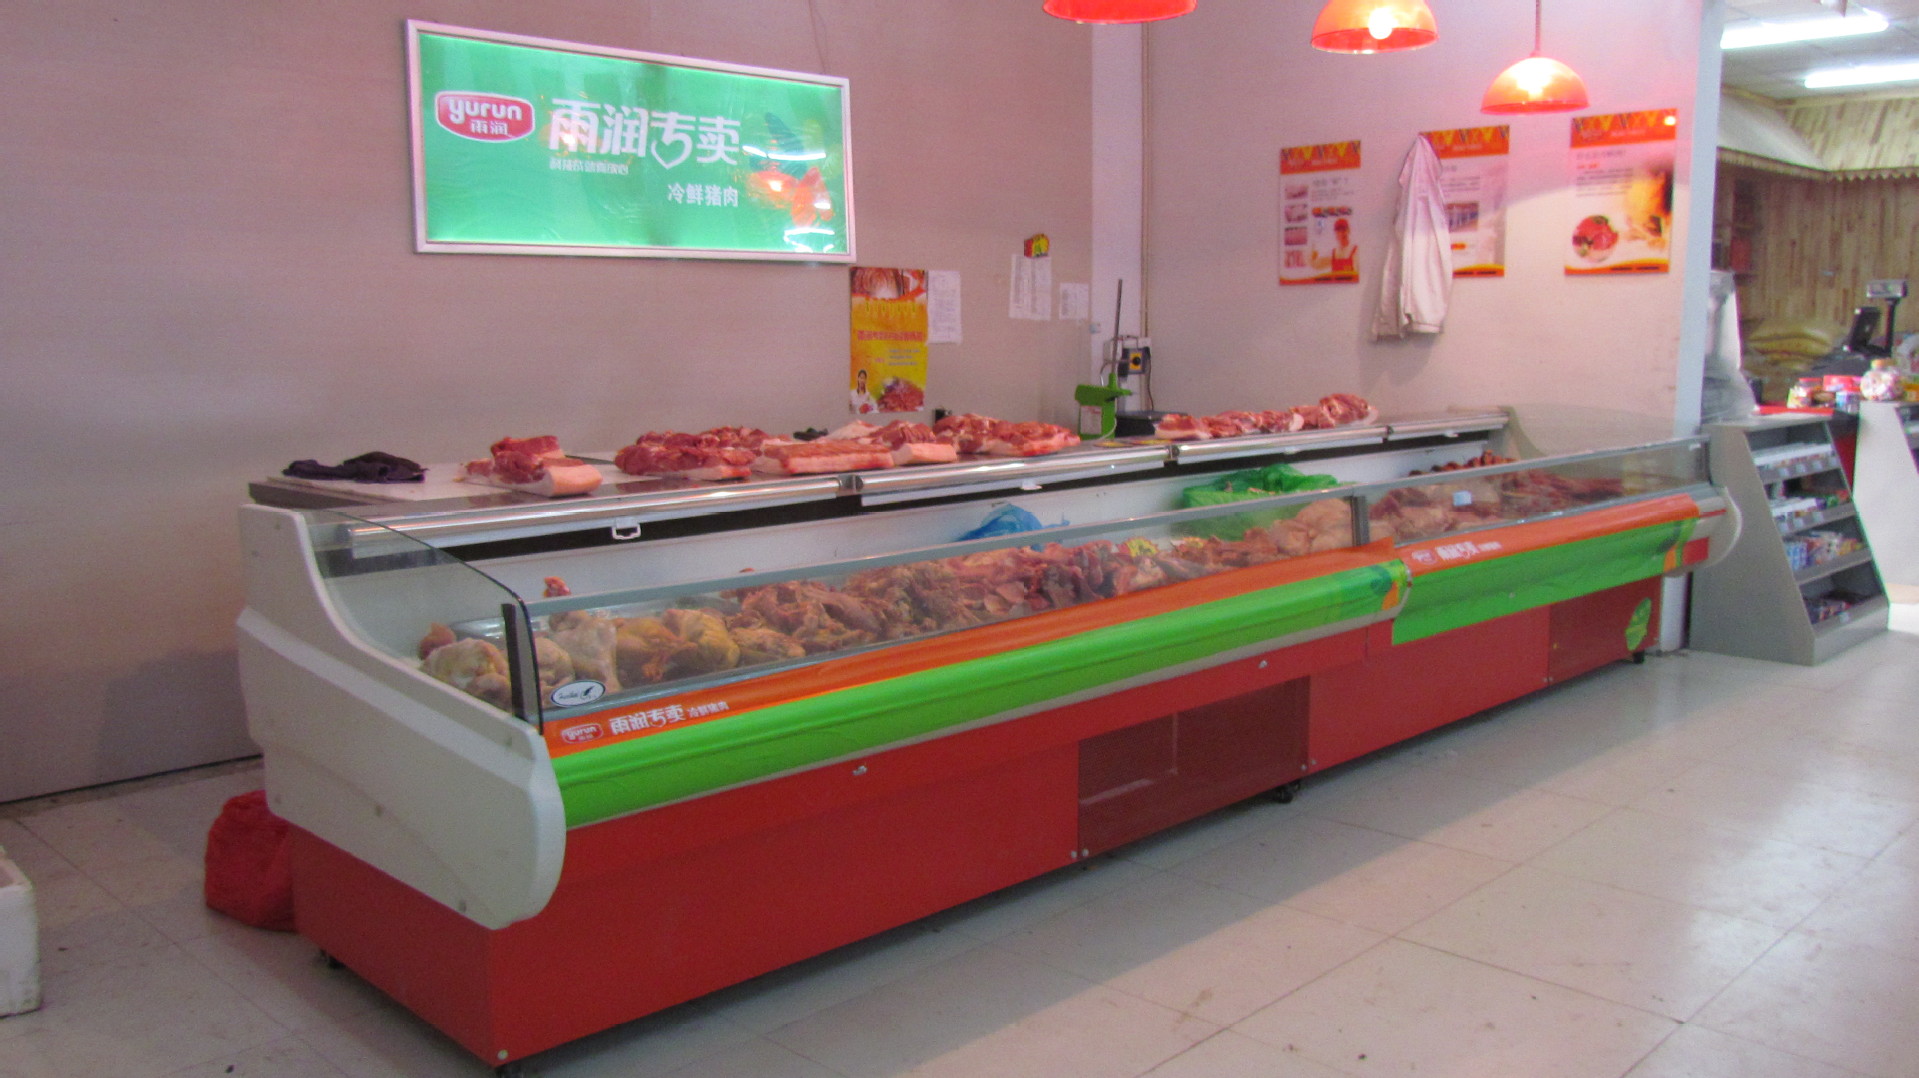 多品牌冷鲜肉专卖店冷柜,冷鲜肉展示柜,海鲜展示柜,寿司展示柜